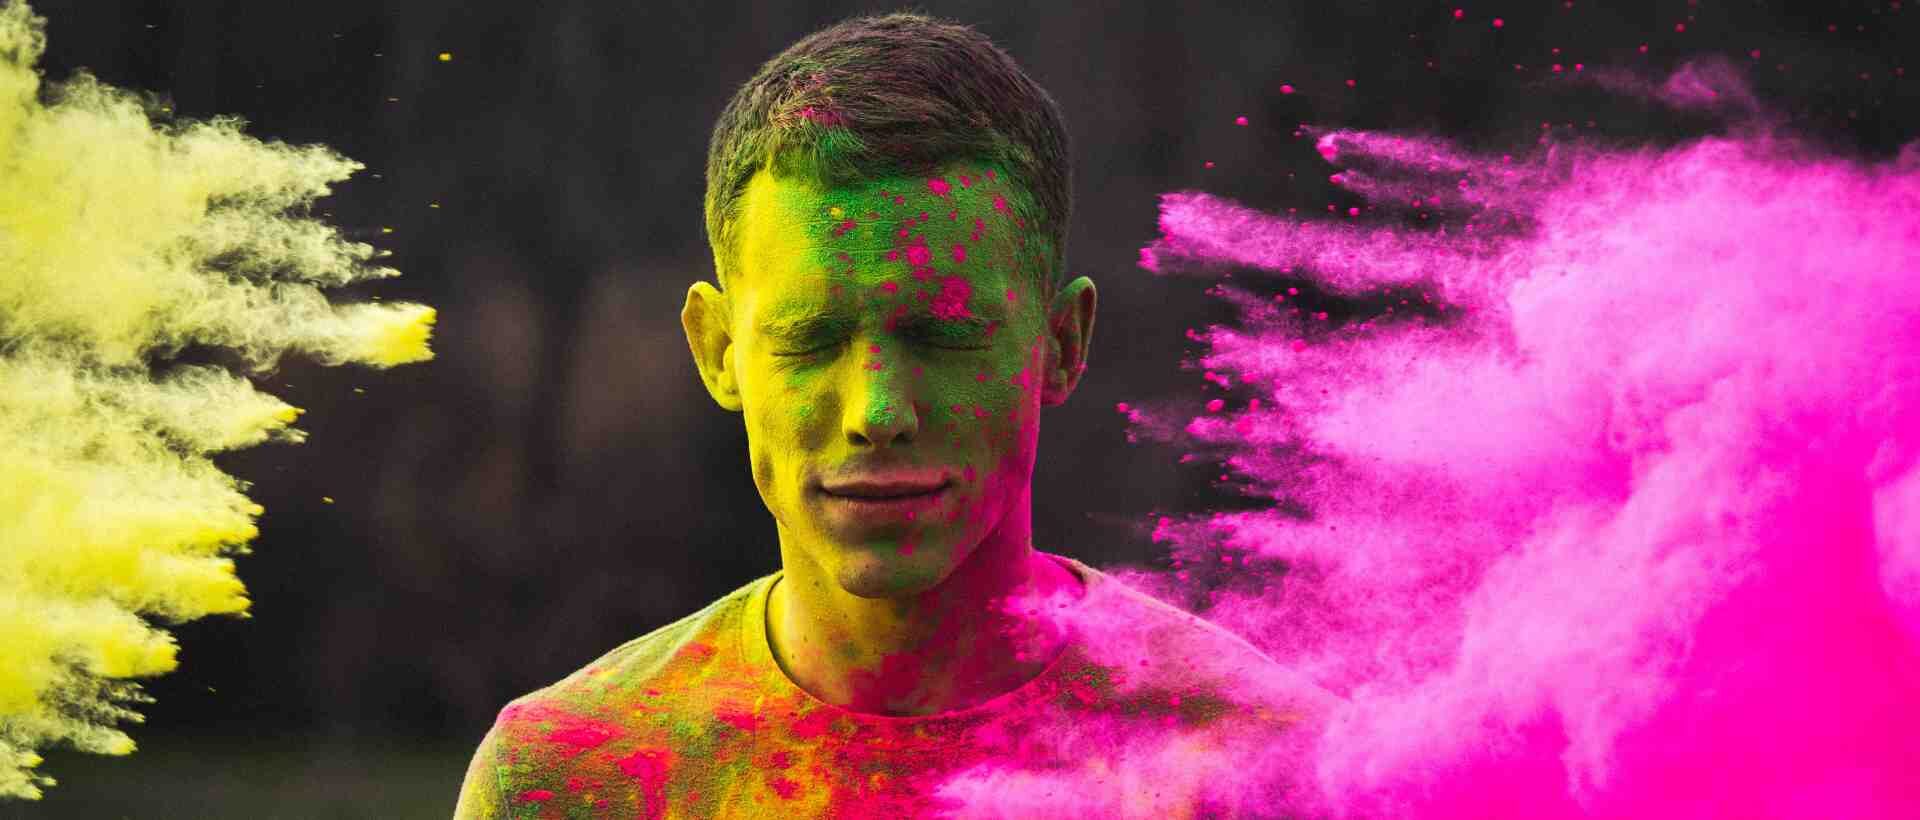 Ein Mann an einem Farbfestival sinnbildlich für Farbpsychologie